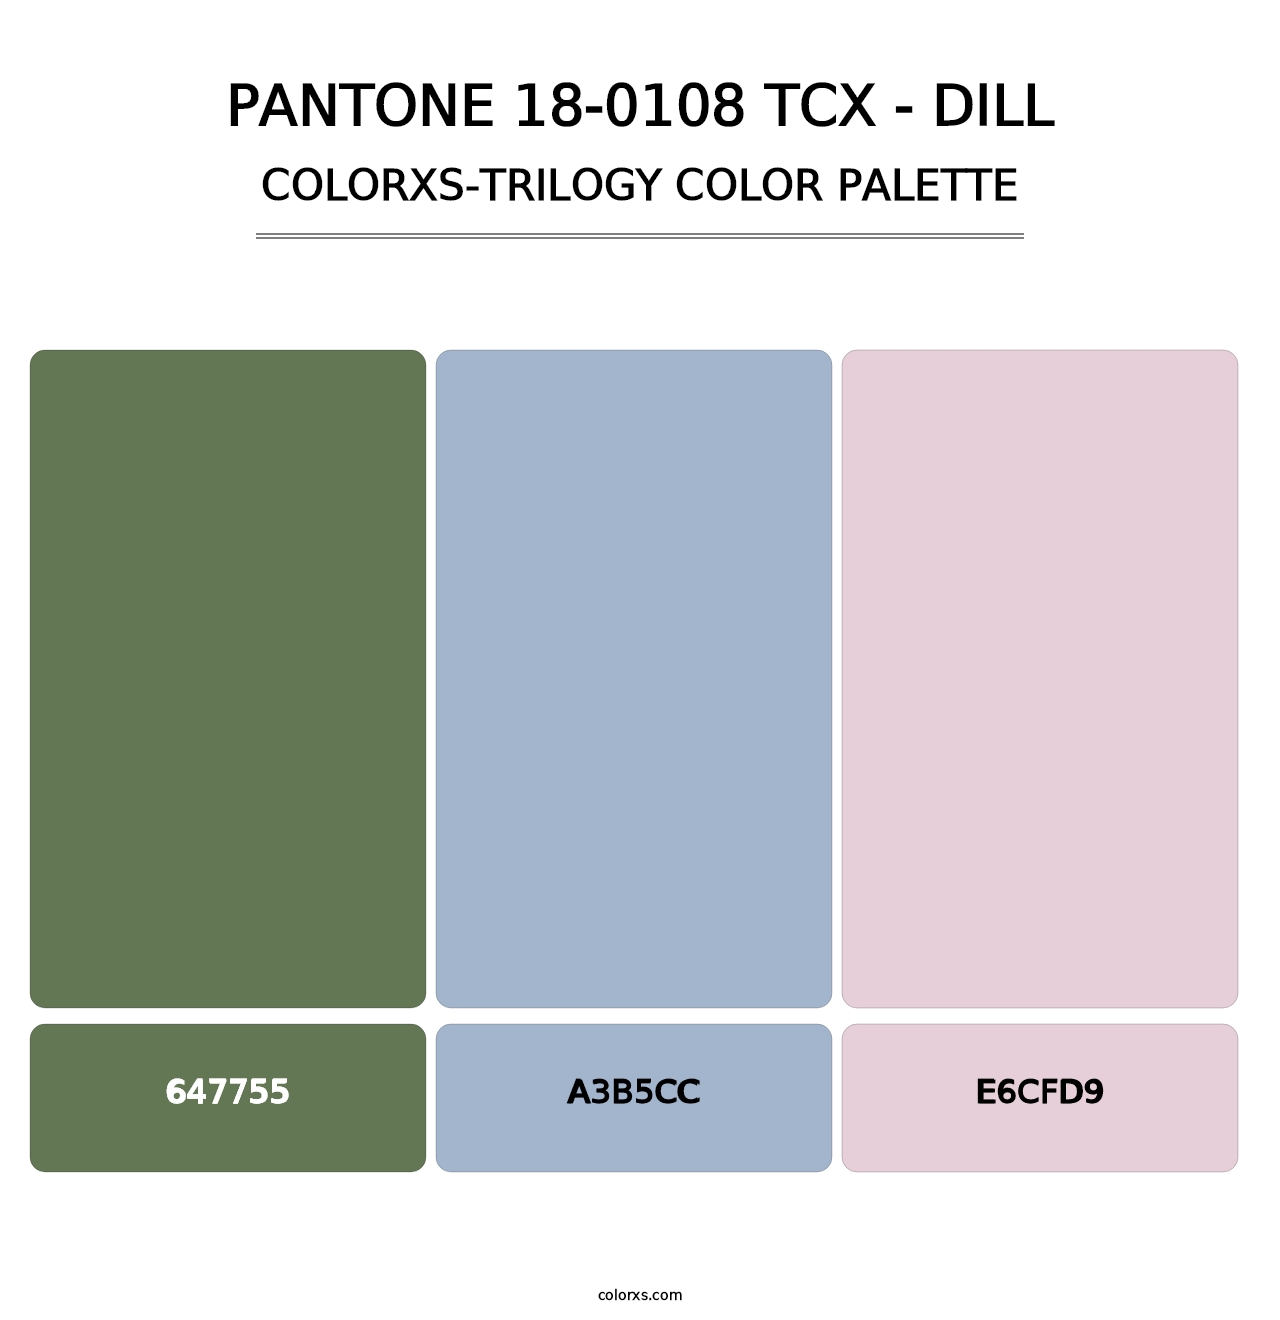 PANTONE 18-0108 TCX - Dill - Colorxs Trilogy Palette